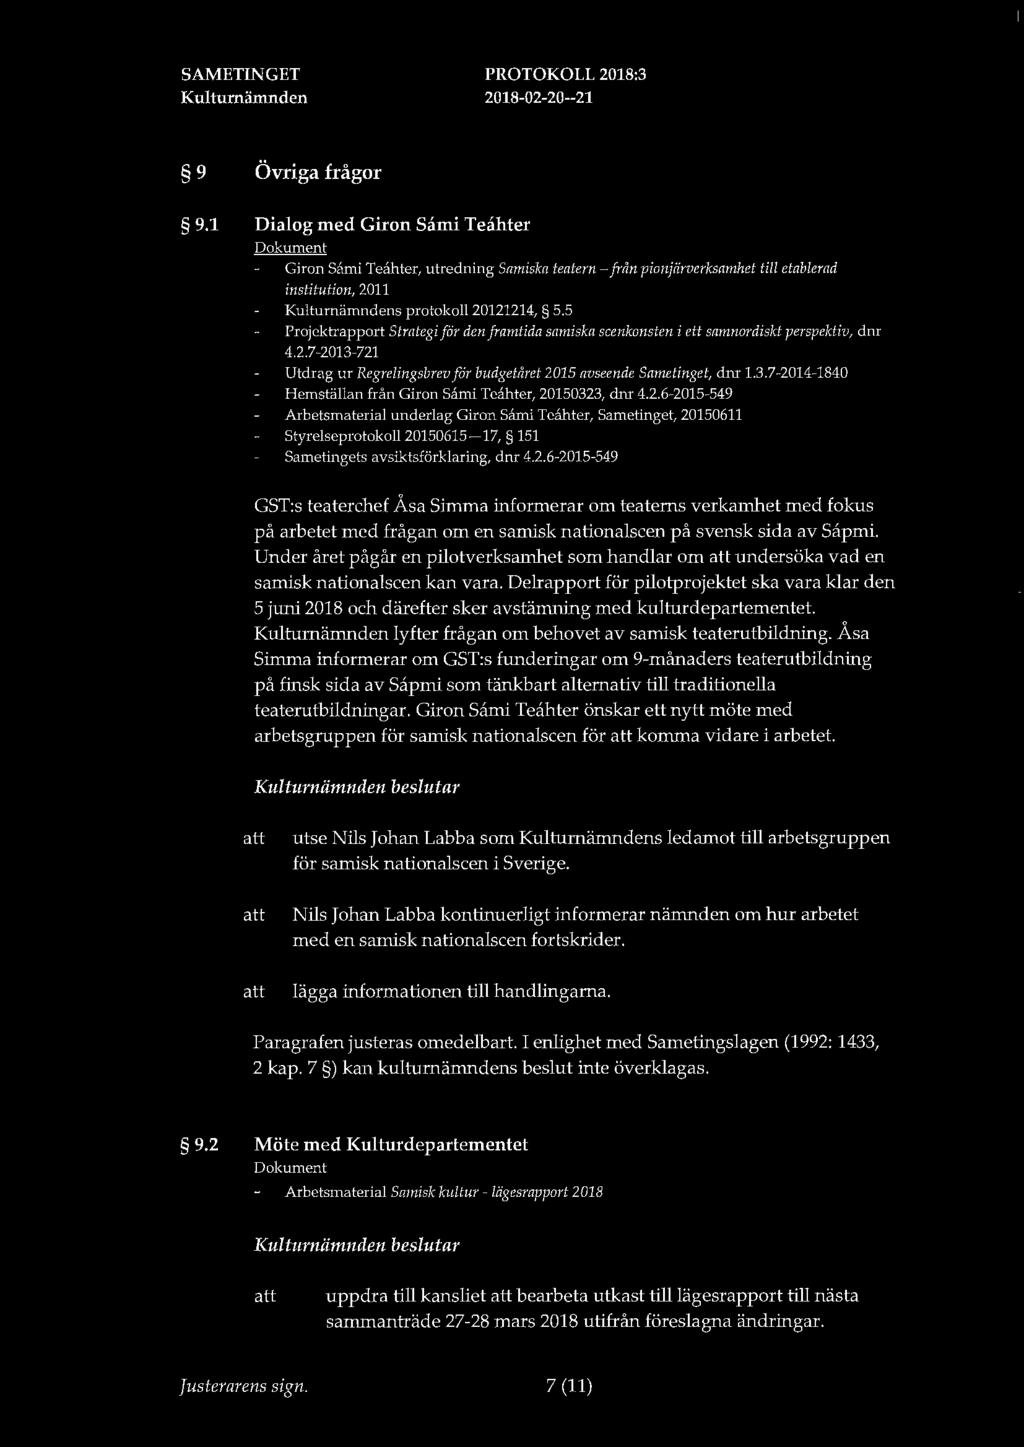 9 Övriga frågor 9.1 Dialog med Giron Sami Teahter Giron Sami Teahter, utredning Samiska teatern-från pionjärverksamhet till etablerad institution, 2011 s protokoll 20121214, 5.